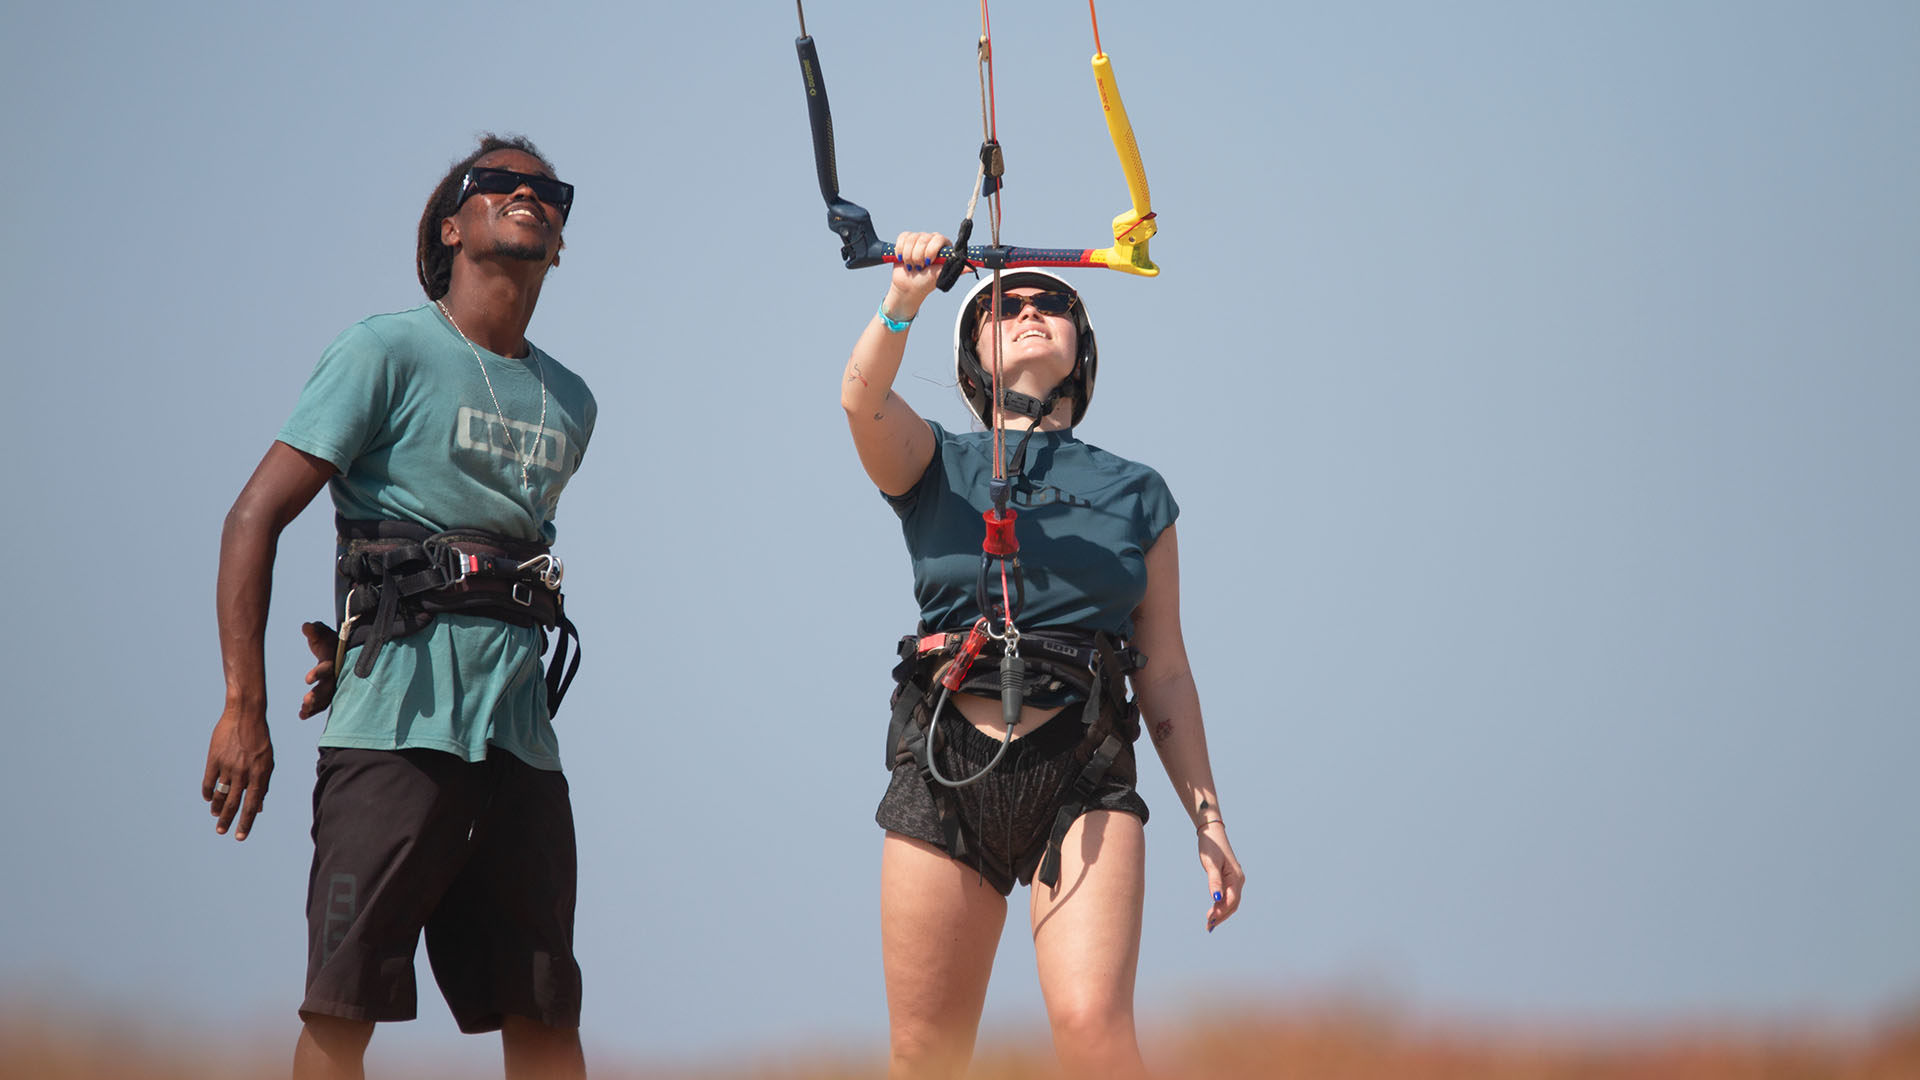 kitesurf lessons beginner